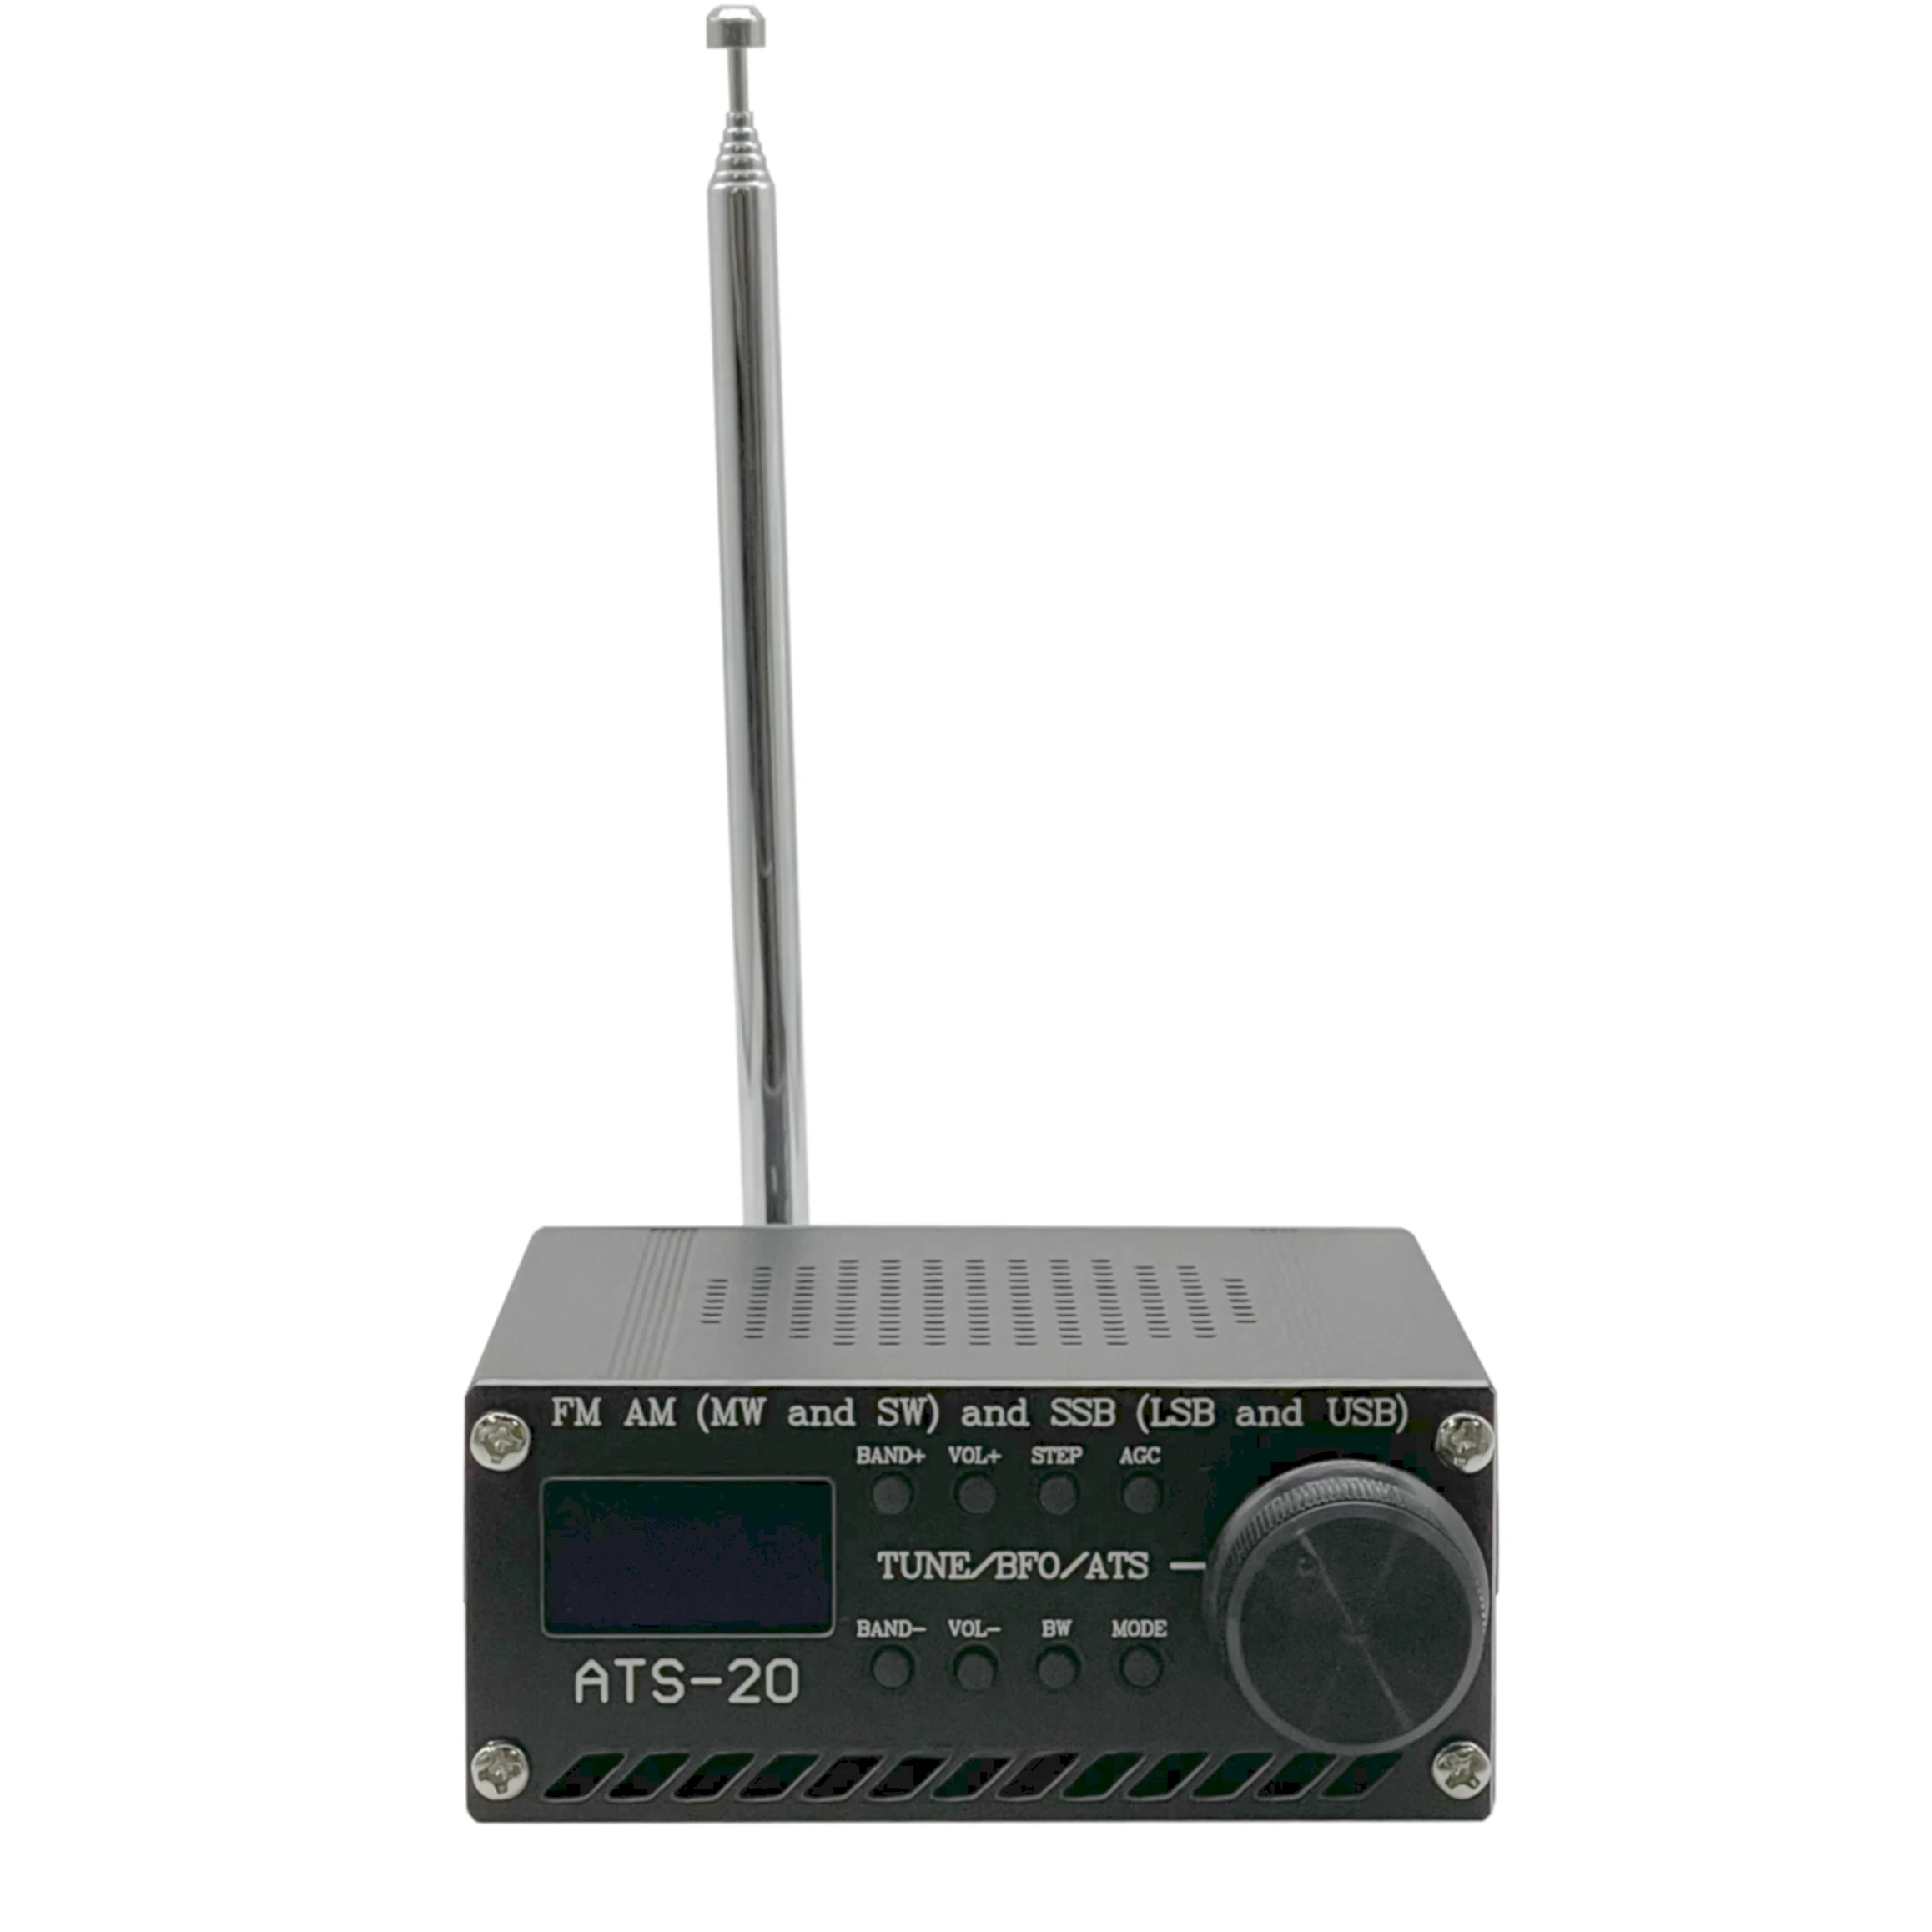 

Собранный радиоприемник SI4732 для всех диапазонов FM AM (MW & SW) SSB (LSB & USB) с литиевой батареей + антенной + динамиком + чехлом